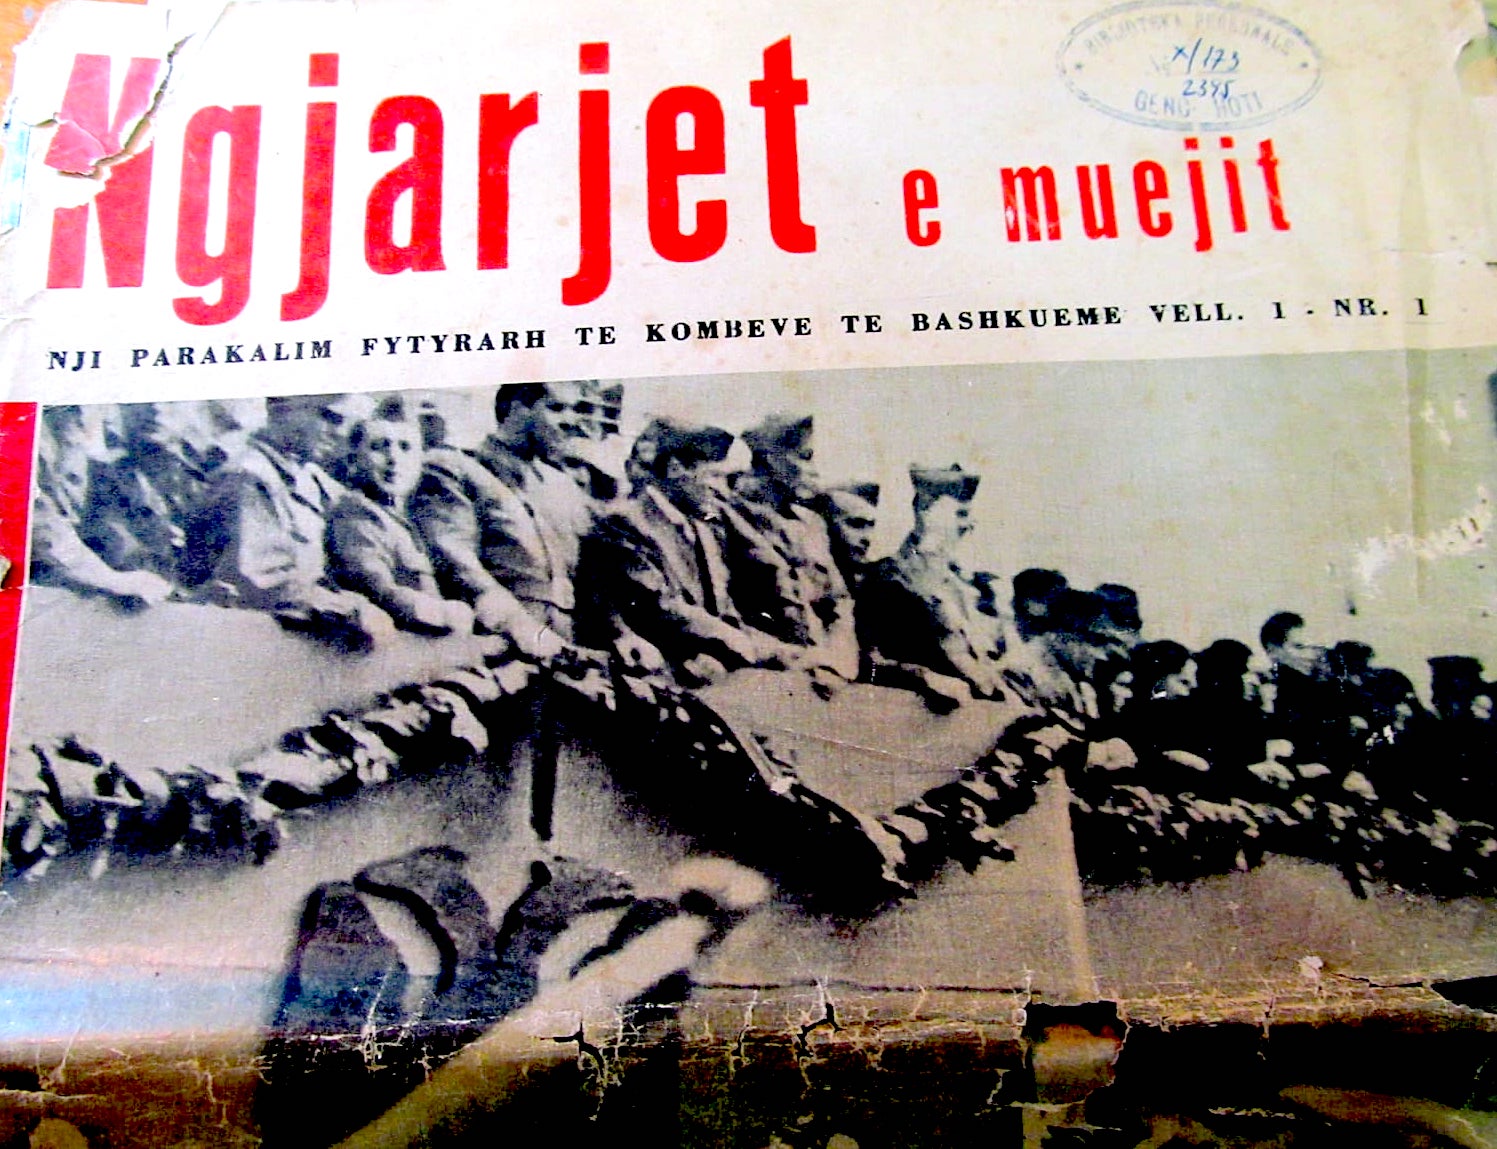 Revista amerikane në gjuhën shqipe - dhjetor 1944 që jep lajmin